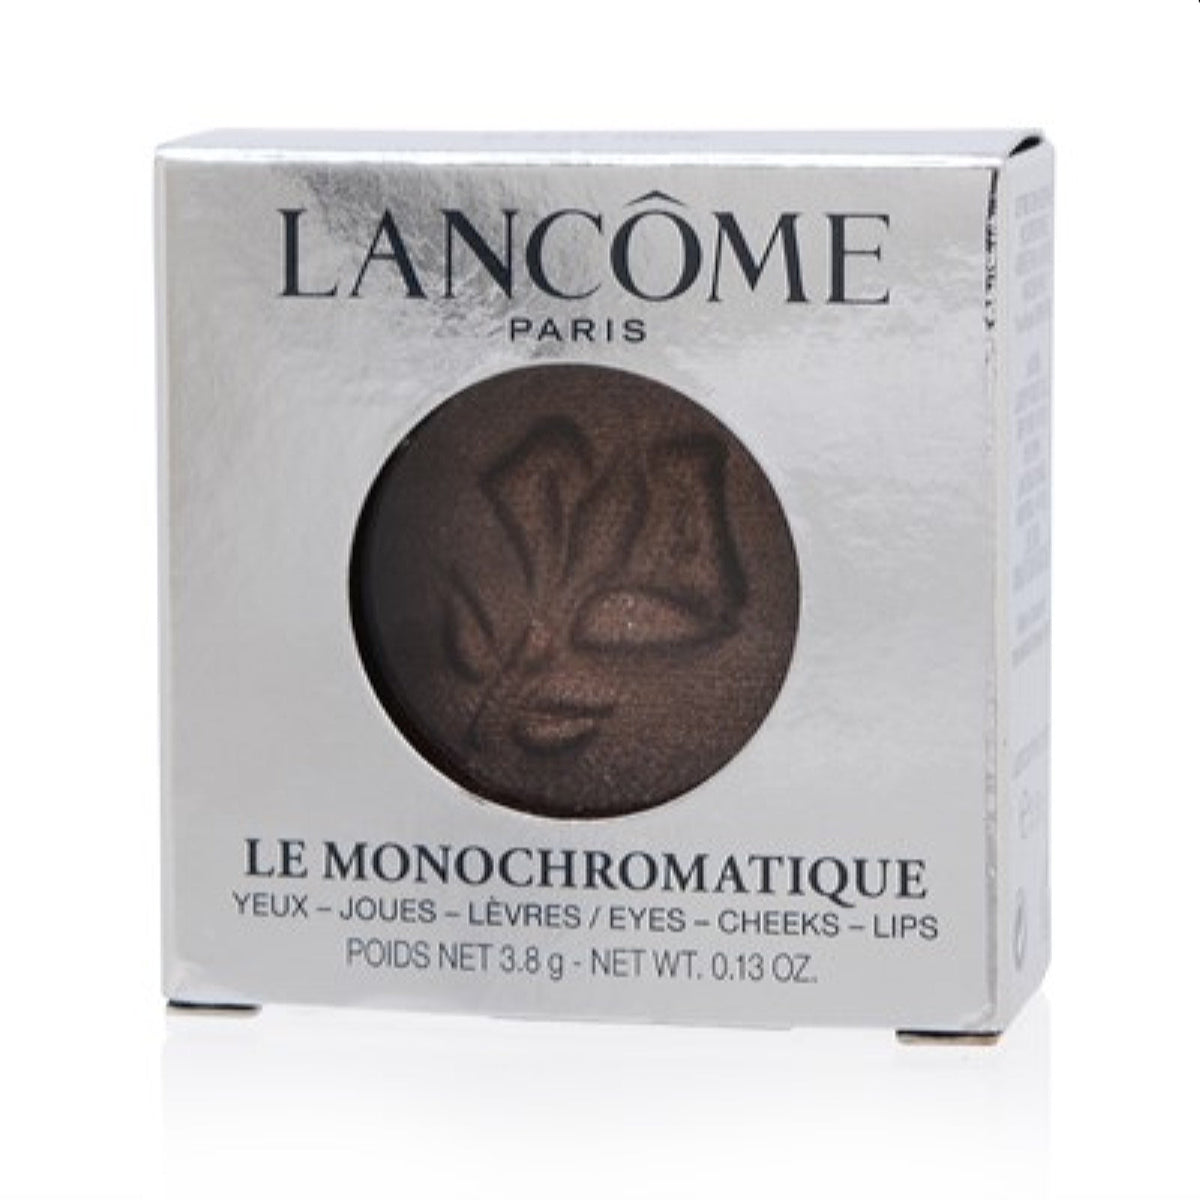 Lancome Le Monochromatique Eye, Cheek, Lip Crm-To-Powder Tint (A La Mode) .13 Oz S2956800